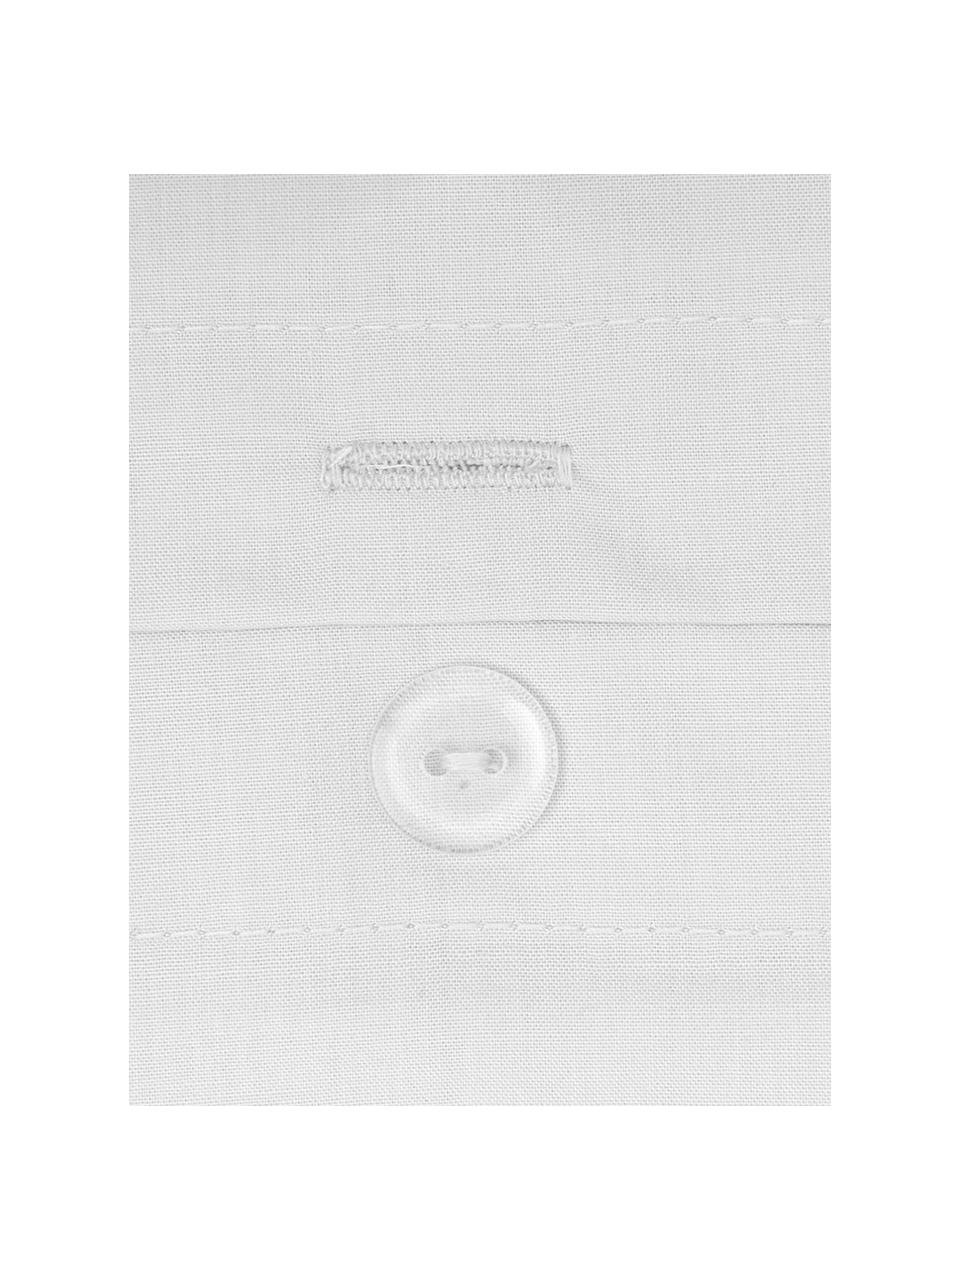 Biancheria da letto in cotone percalle grigio chiaro Elsie, Grigio chiaro, Larg. 150 x Lung. 300 cm + 1 federa Larg. 50 x Lung. 80 cm